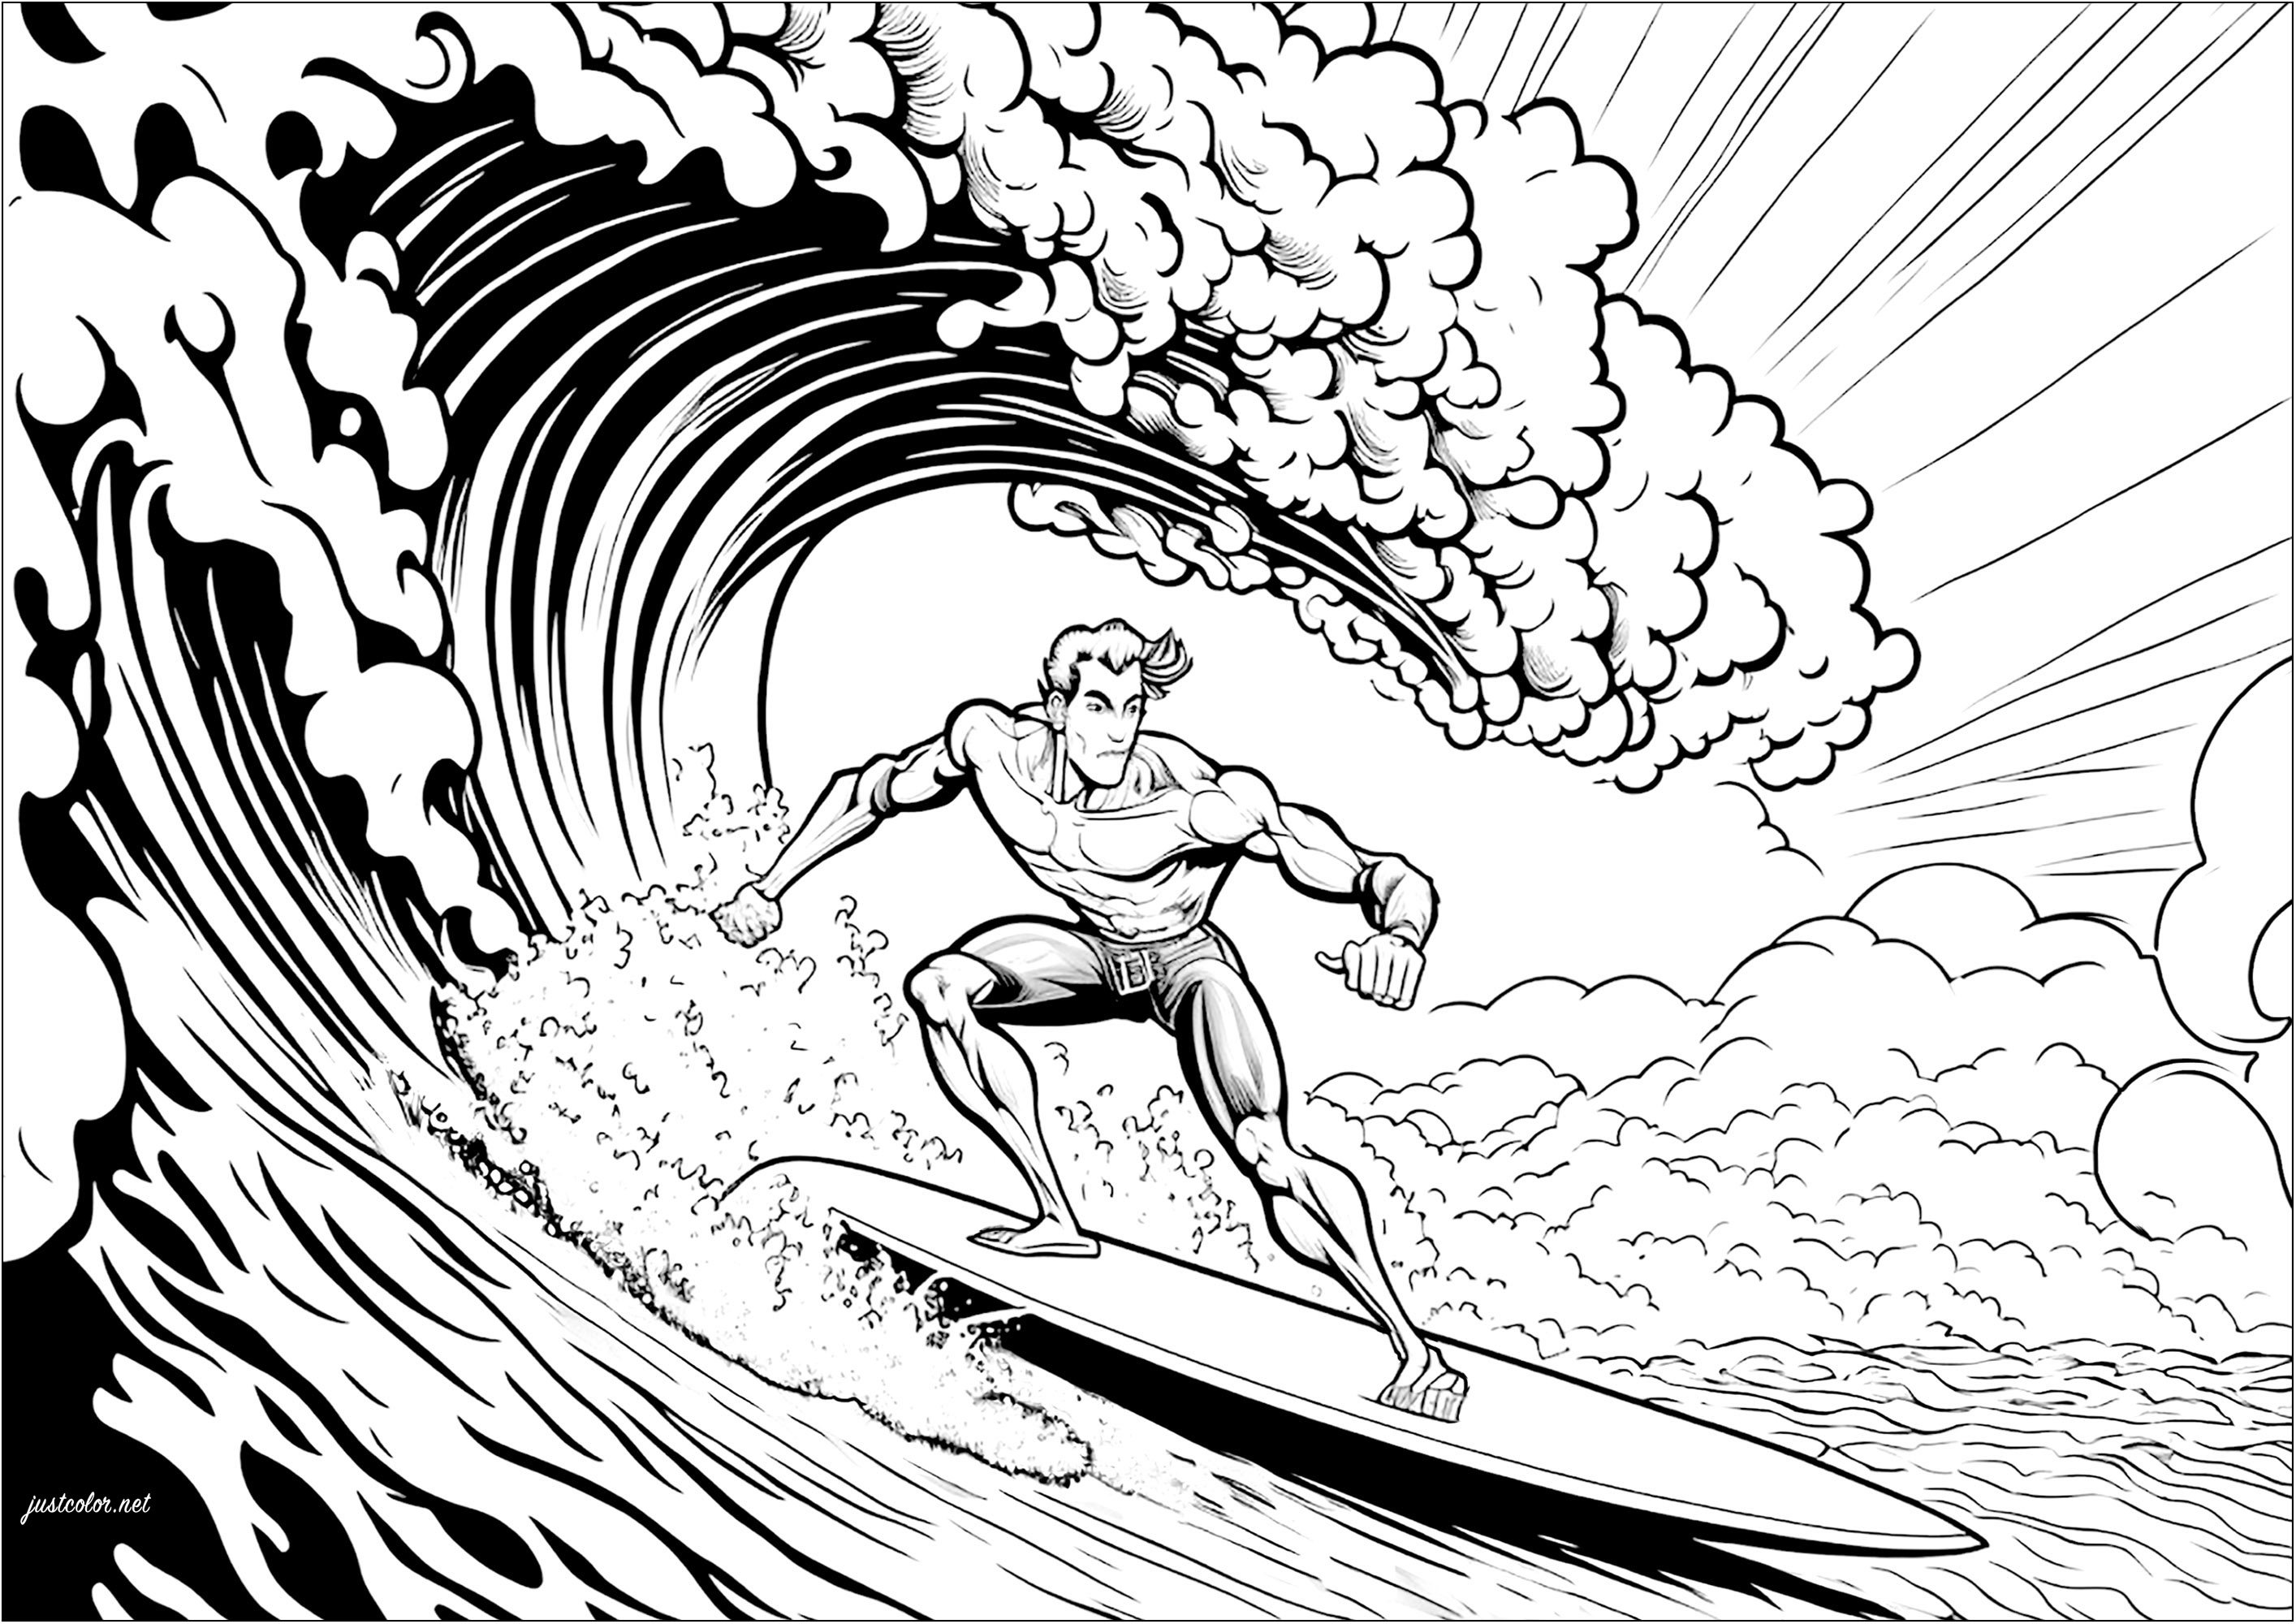 Surca las olas con este divertido dibujo para colorear de un surfista. Con este surfista enfrentándose a una temible ola, esta página para colorear es perfecta para los amantes del mar, el océano y todos los deportes acuáticos.